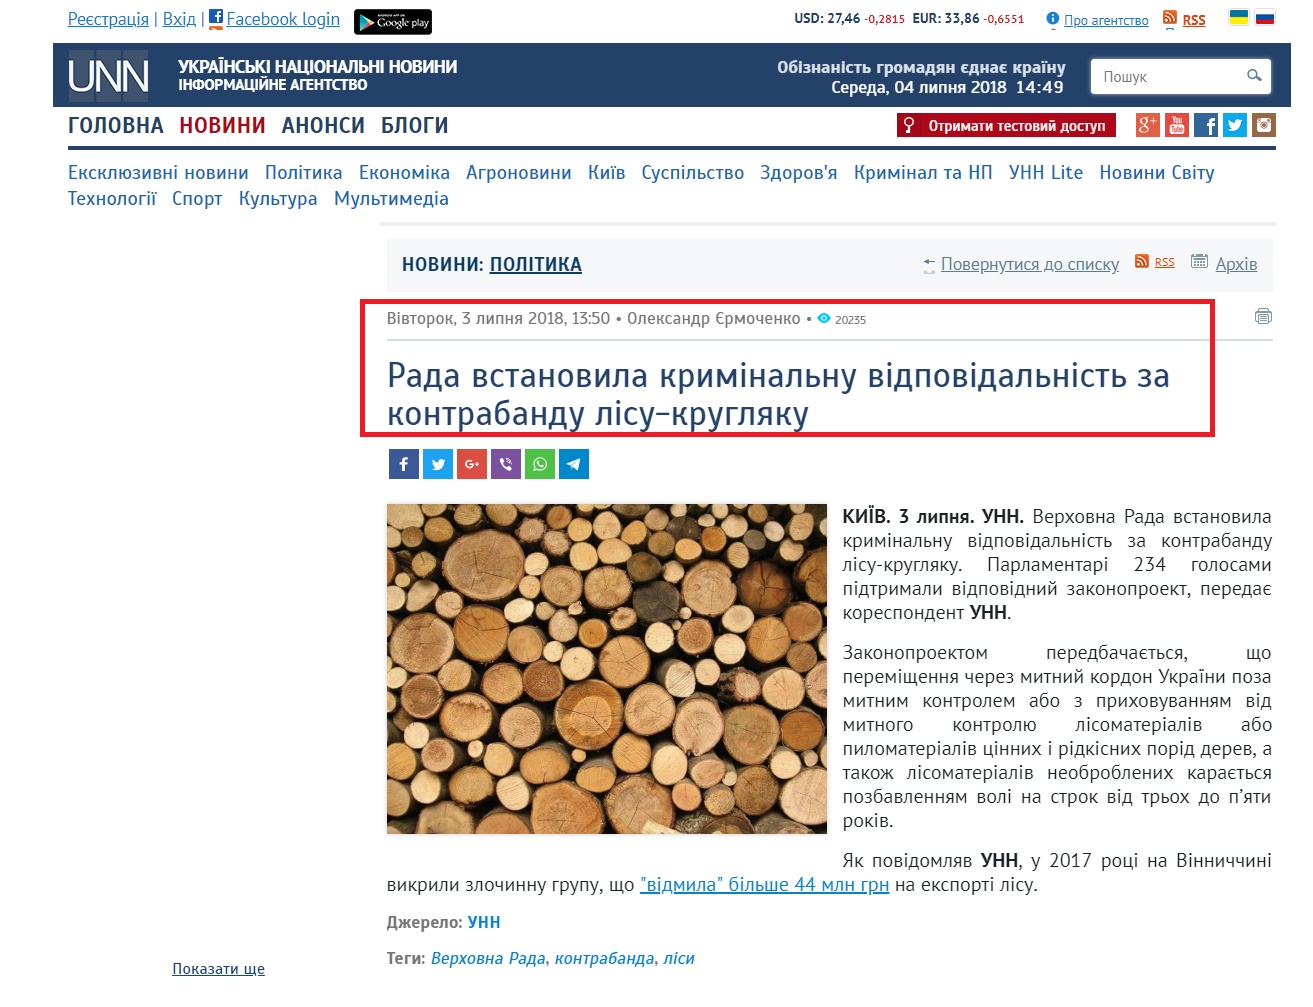 http://www.unn.com.ua/uk/news/1739295-rada-vstanovila-kriminalnu-vidpovidalnist-za-kontrabandu-lisu-kruglyaku